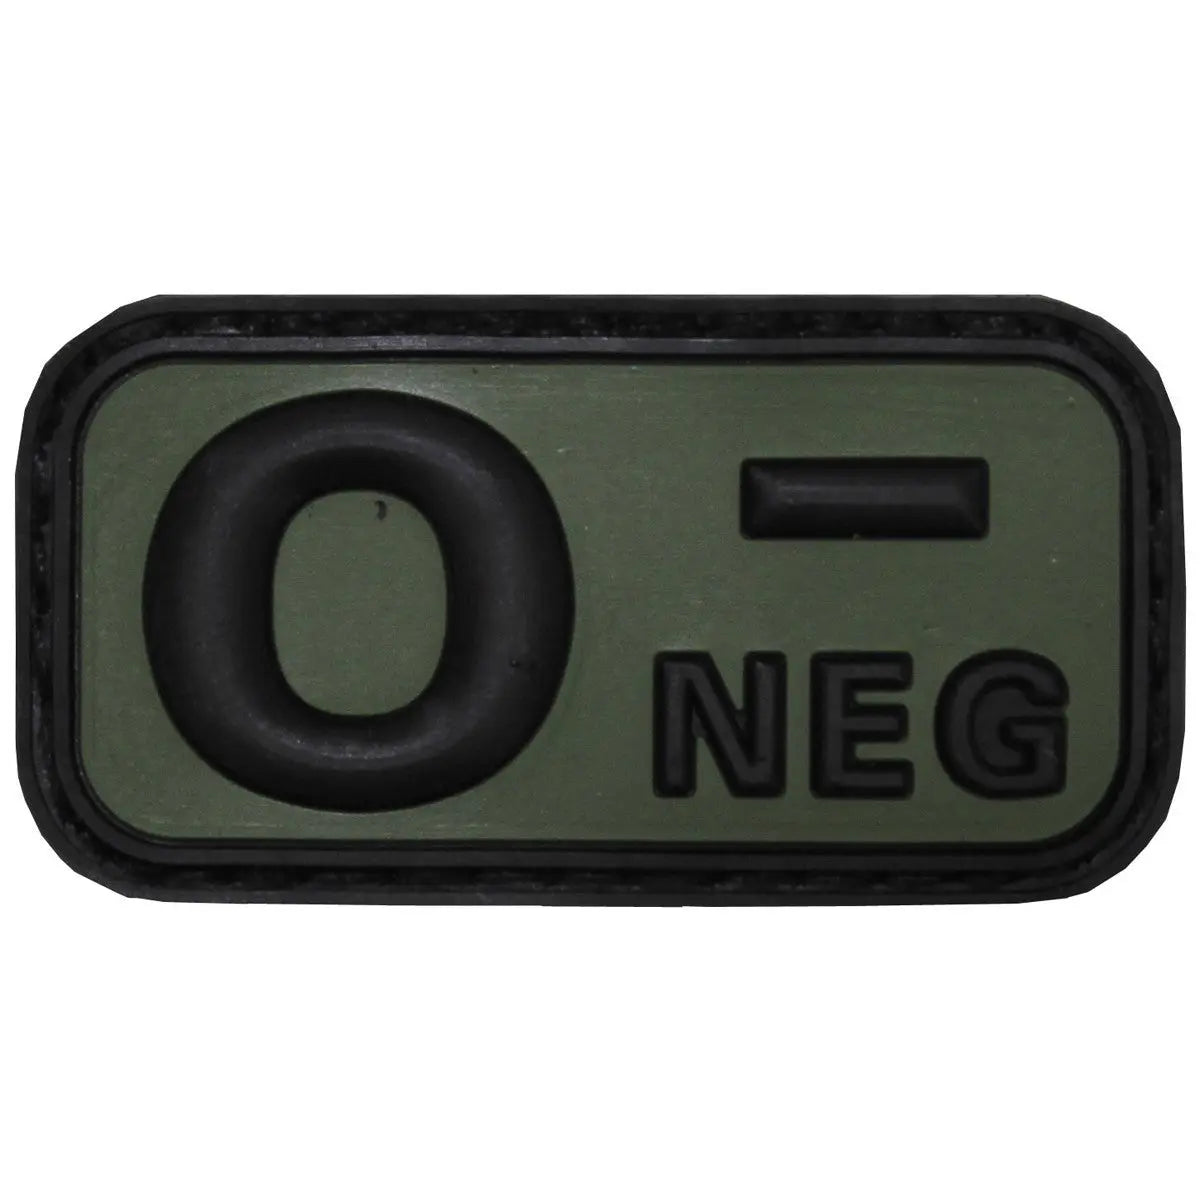 Velcro Patch, black-OD green, blood group "O NEG", 3D